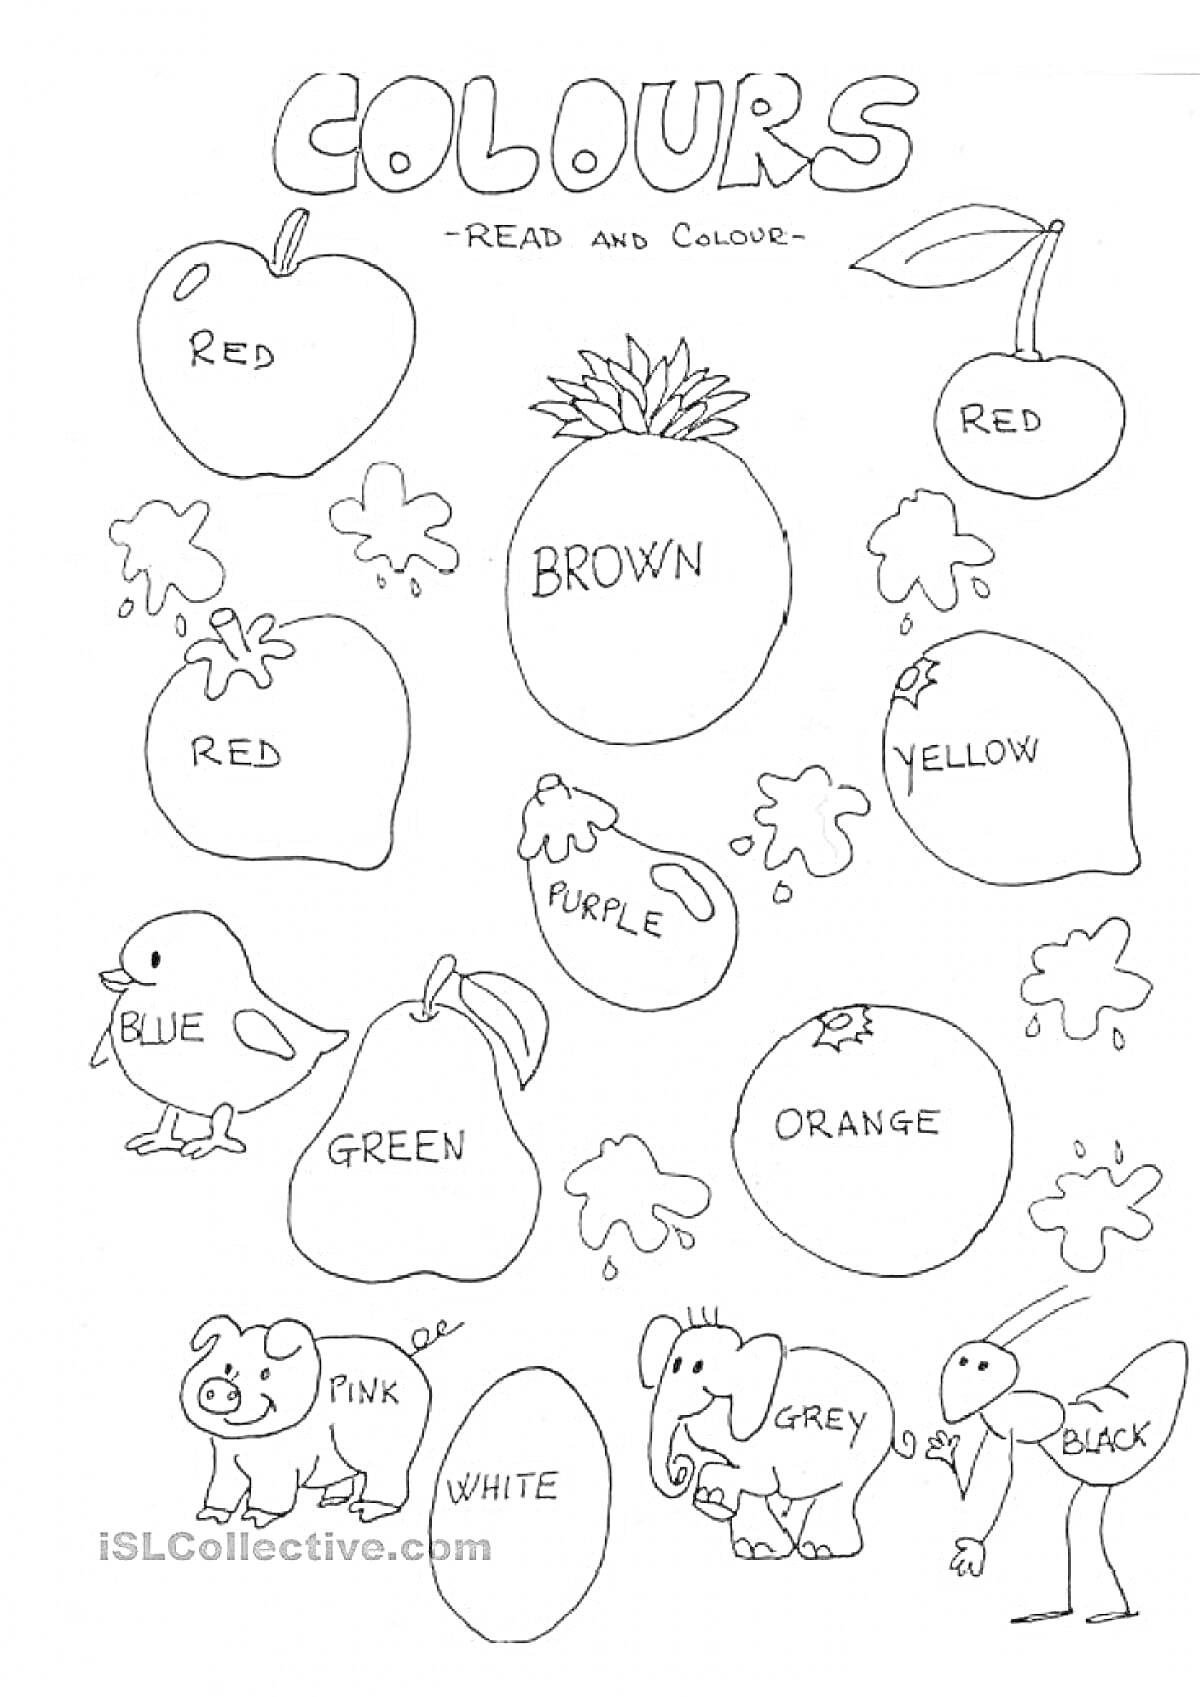 Раскраска Раскраска с изображением яблока, клубники, ананаса, груши, банана, цыпленка, арбуза, апельсина, медведя, слона и страуса с заданными цветами на английском языке